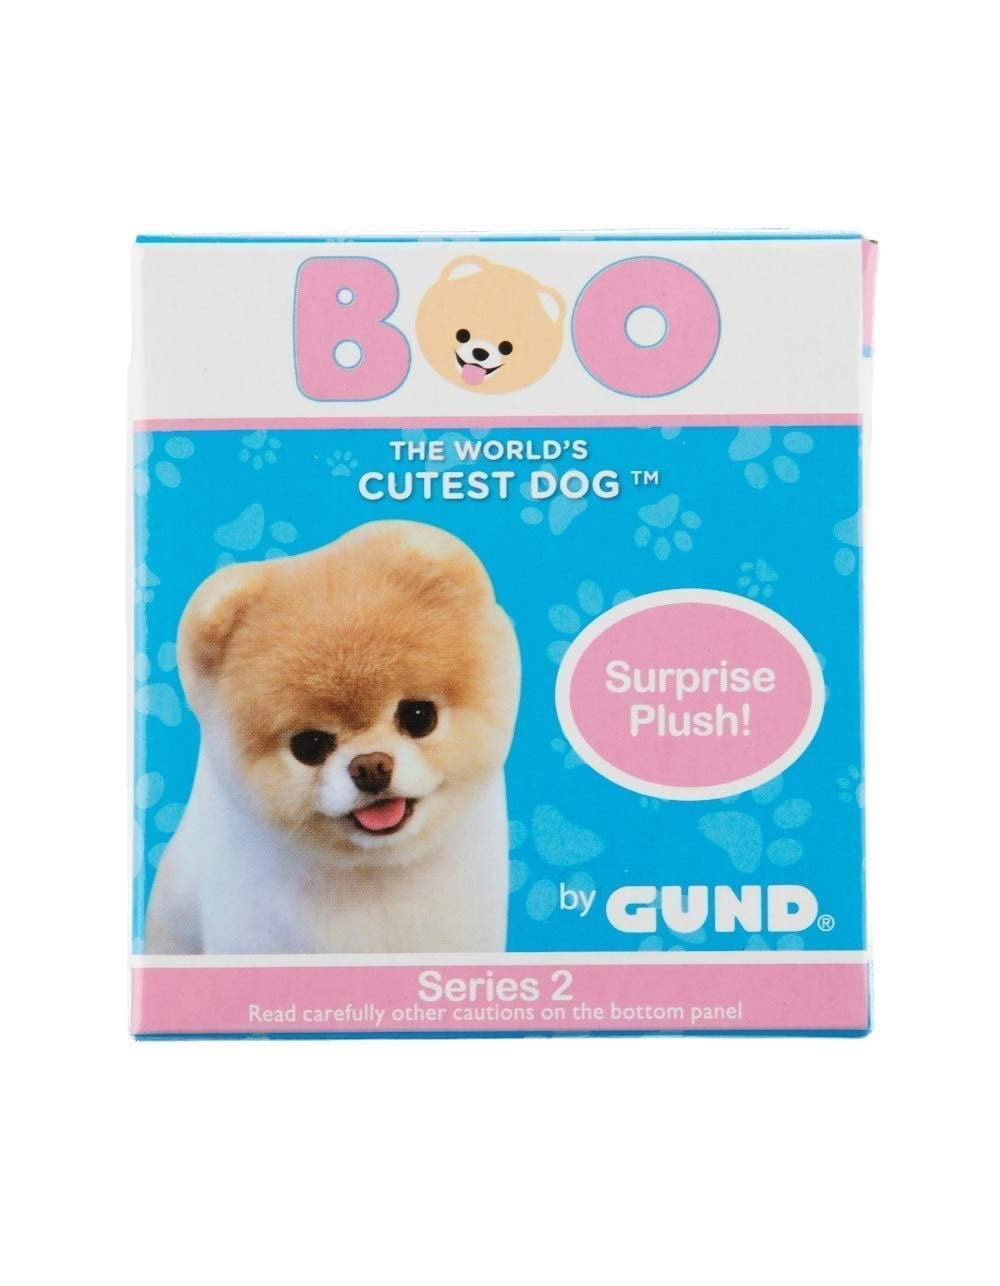 RaRe Details about   NeW BOO Worlds Cutest Dog GUND Surprise PLUSH Keychain Series 2 CHEETAH 